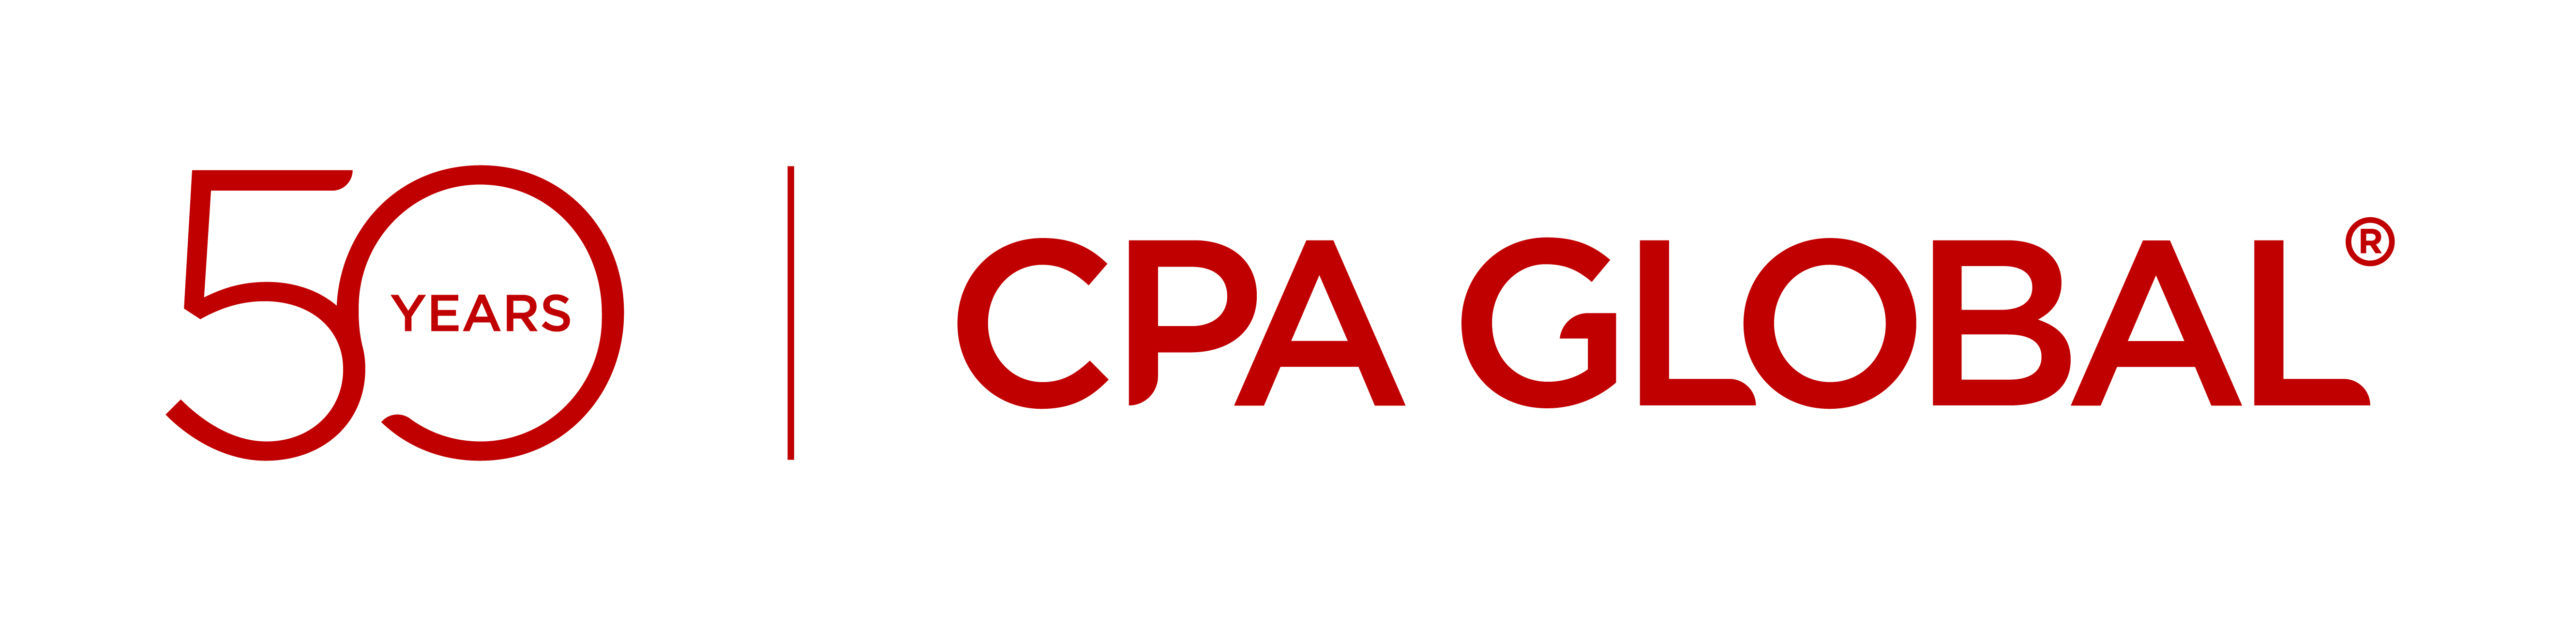 CPA Global